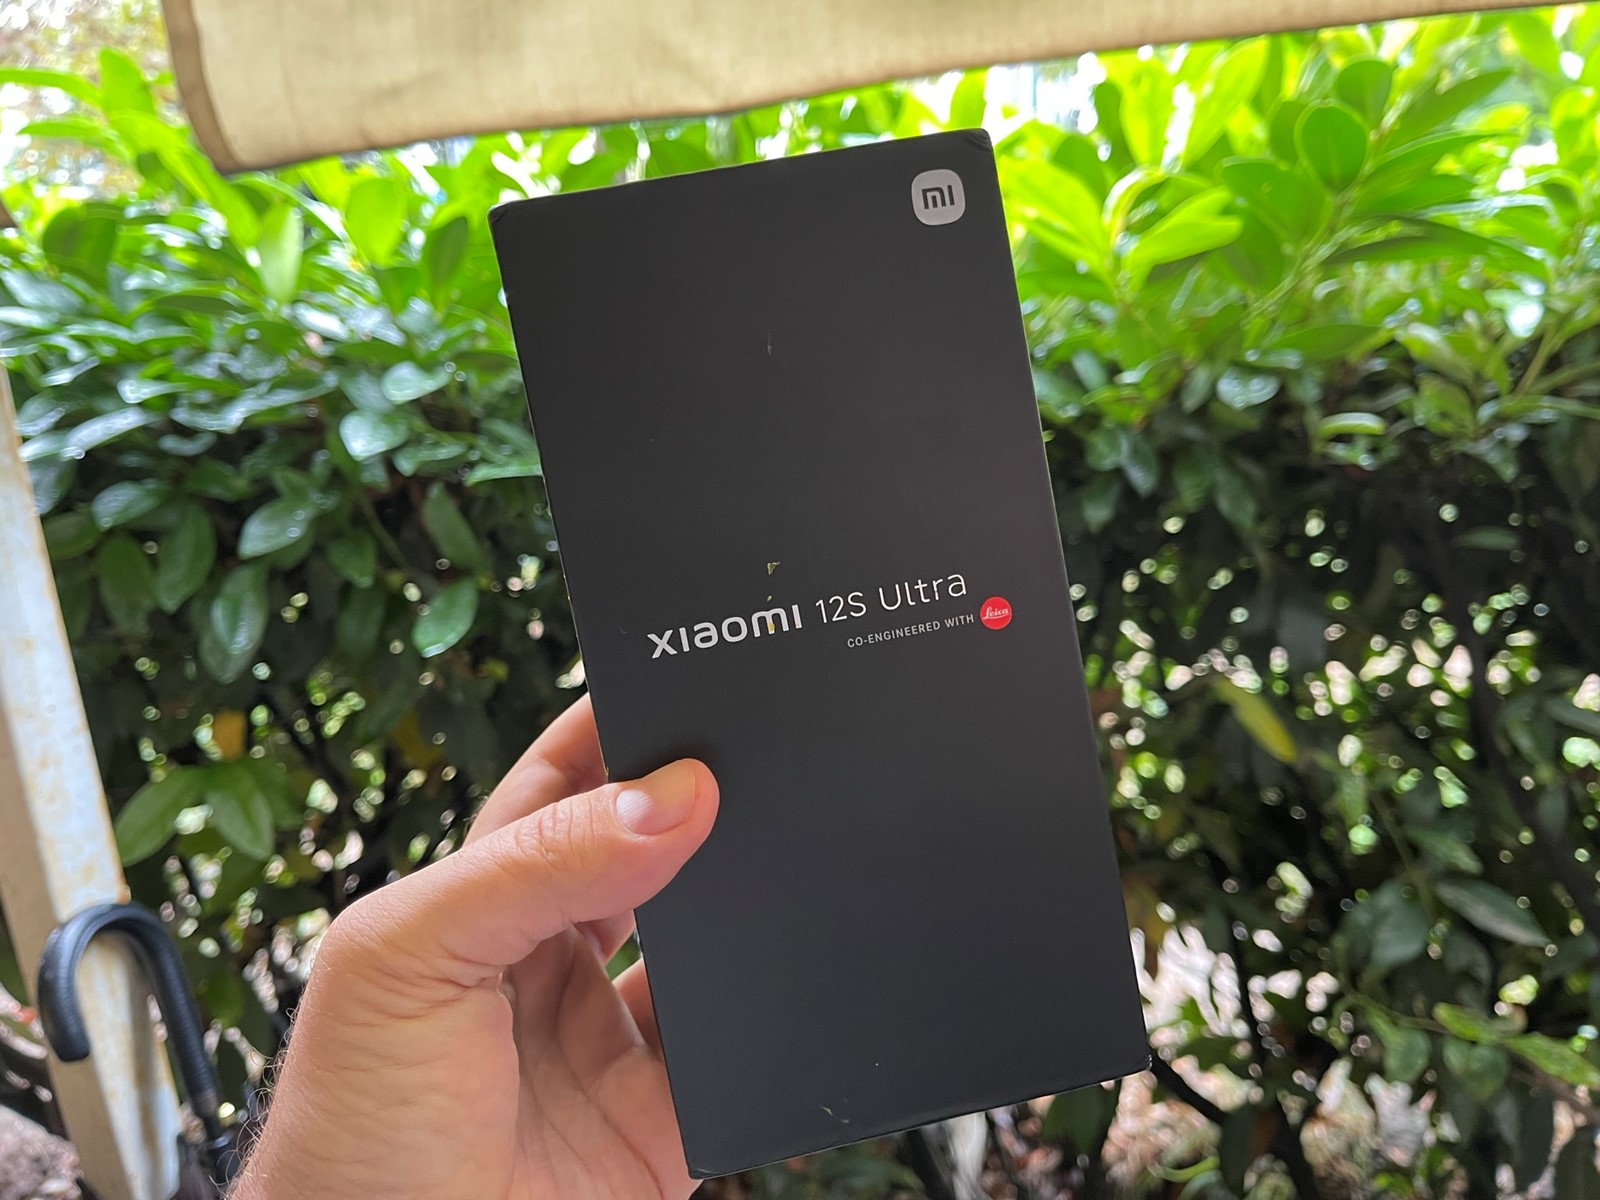 GALERIJA: Xiaomi 12S Ultra - jedan njegov primjerak - posjetio je Hrvatsku  i Bug - Mobiteli @ Bug.hr